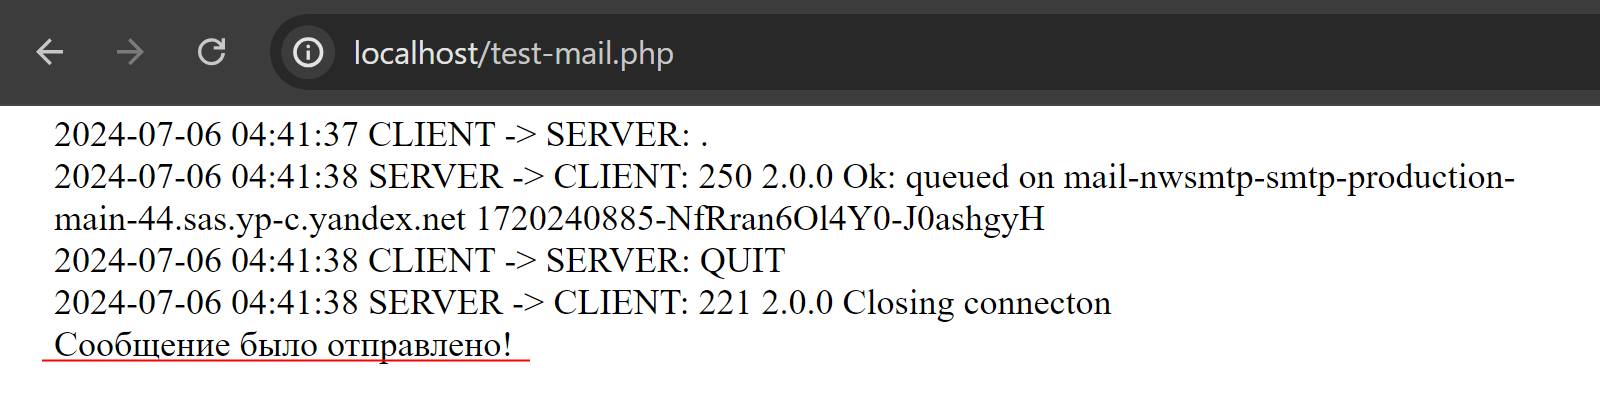 SMTP-лог отправки сообщения с помощью PHPMailer на почту